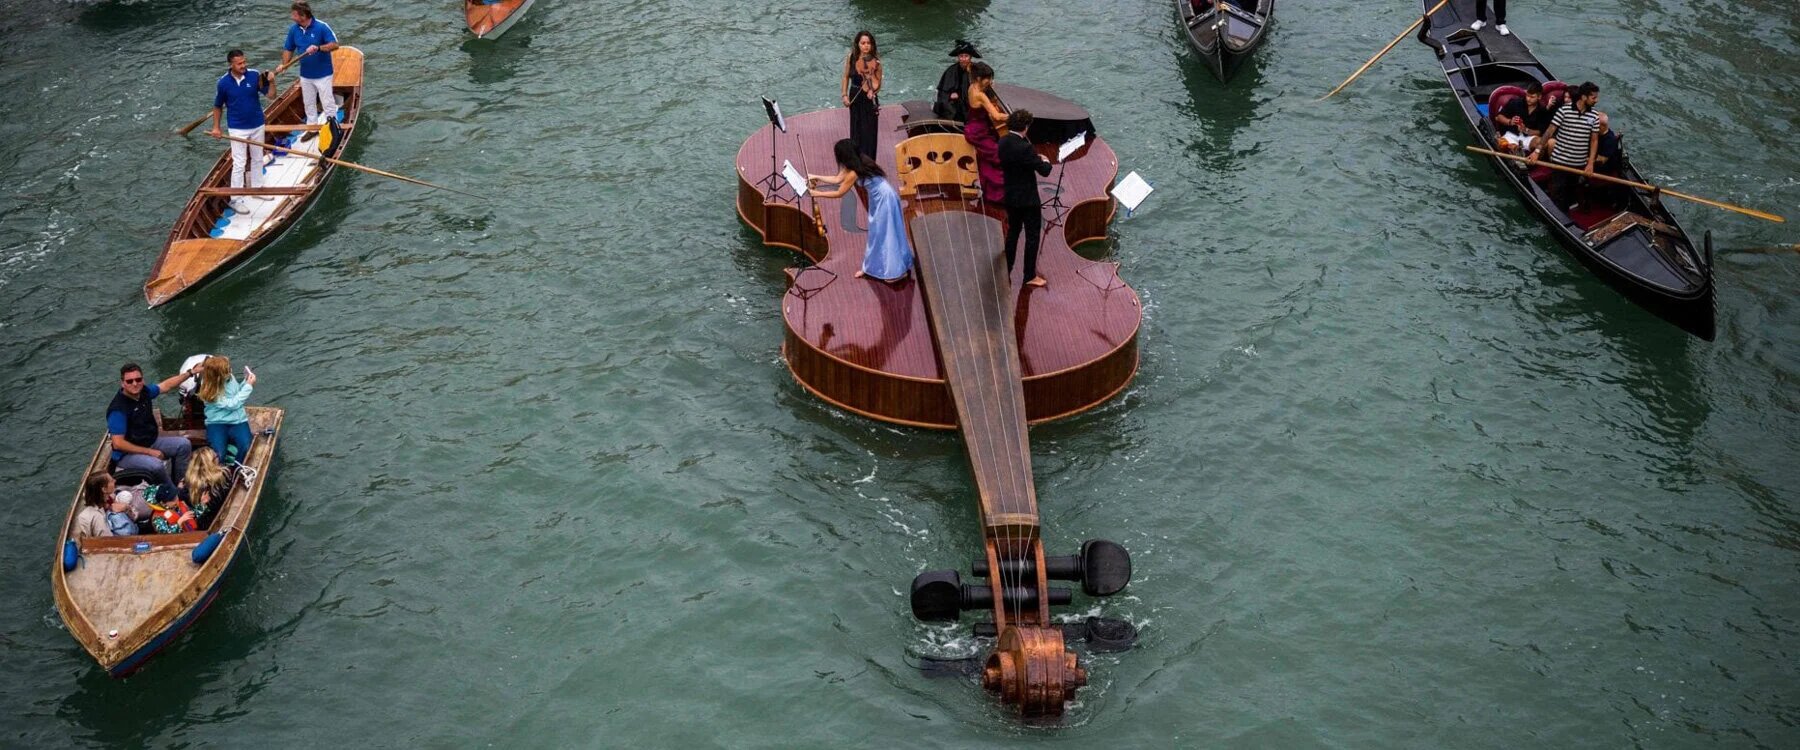 Džinovska violina plovila je Venecijom u slavu umetnosti i kulturnog preporoda